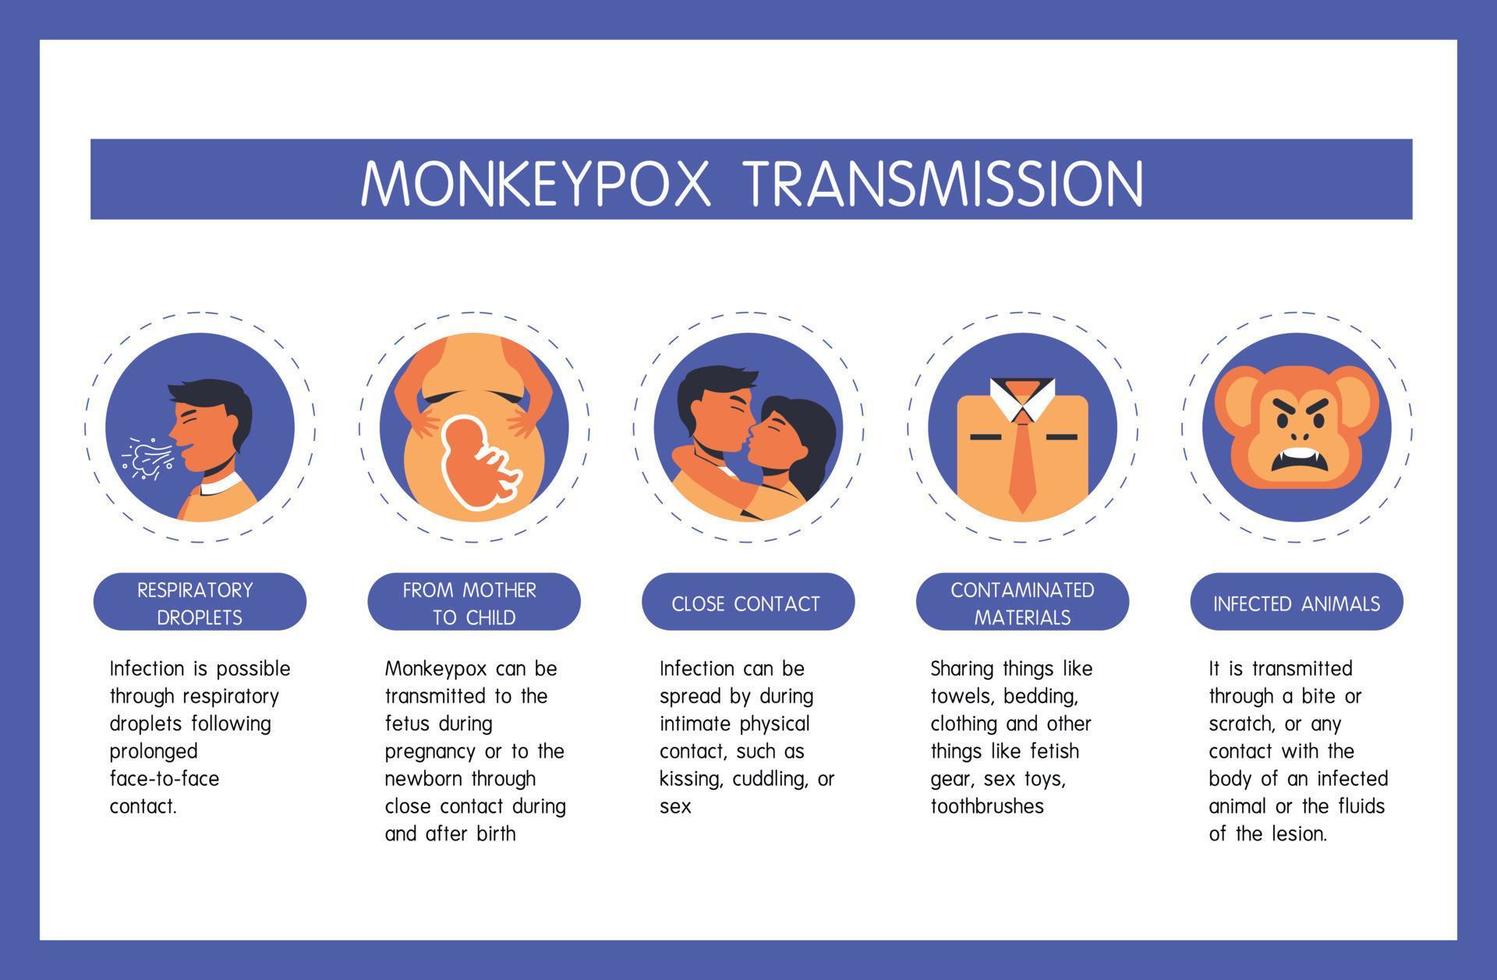 infographie de la transmission du virus monkeypox, contact étroit, objets étrangers, voies respiratoires, de la mère à l'enfant. les humains infectés sont transmis par les singes. design plat avec des icônes vecteur